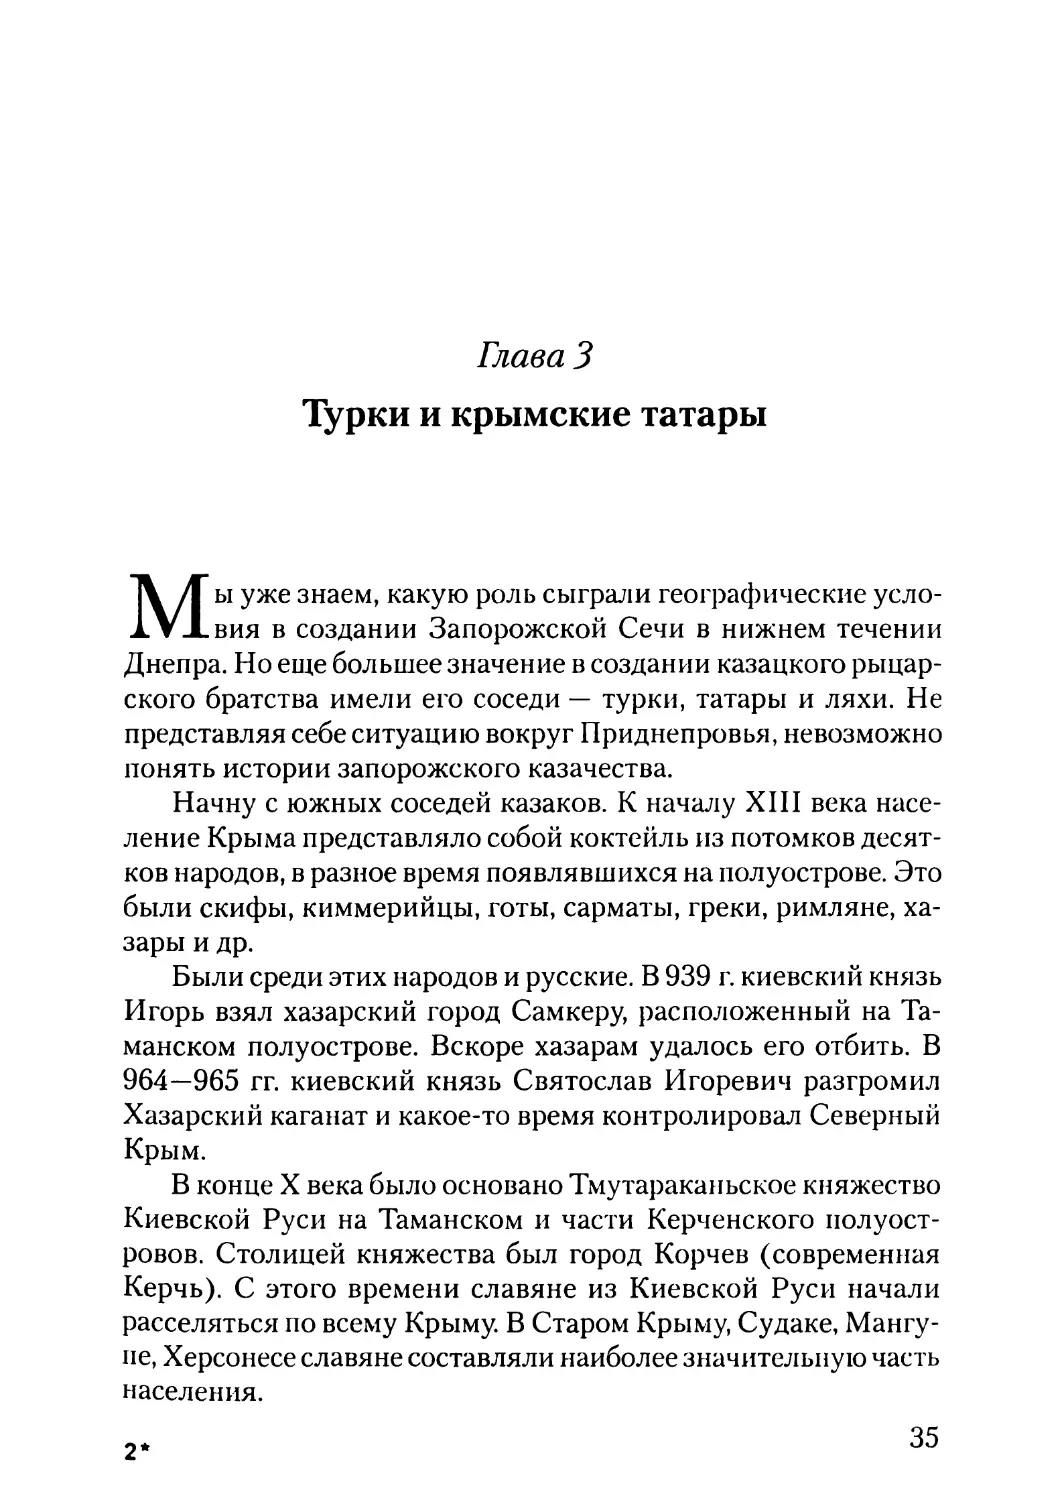 Глава 3. Турки и крымские татары